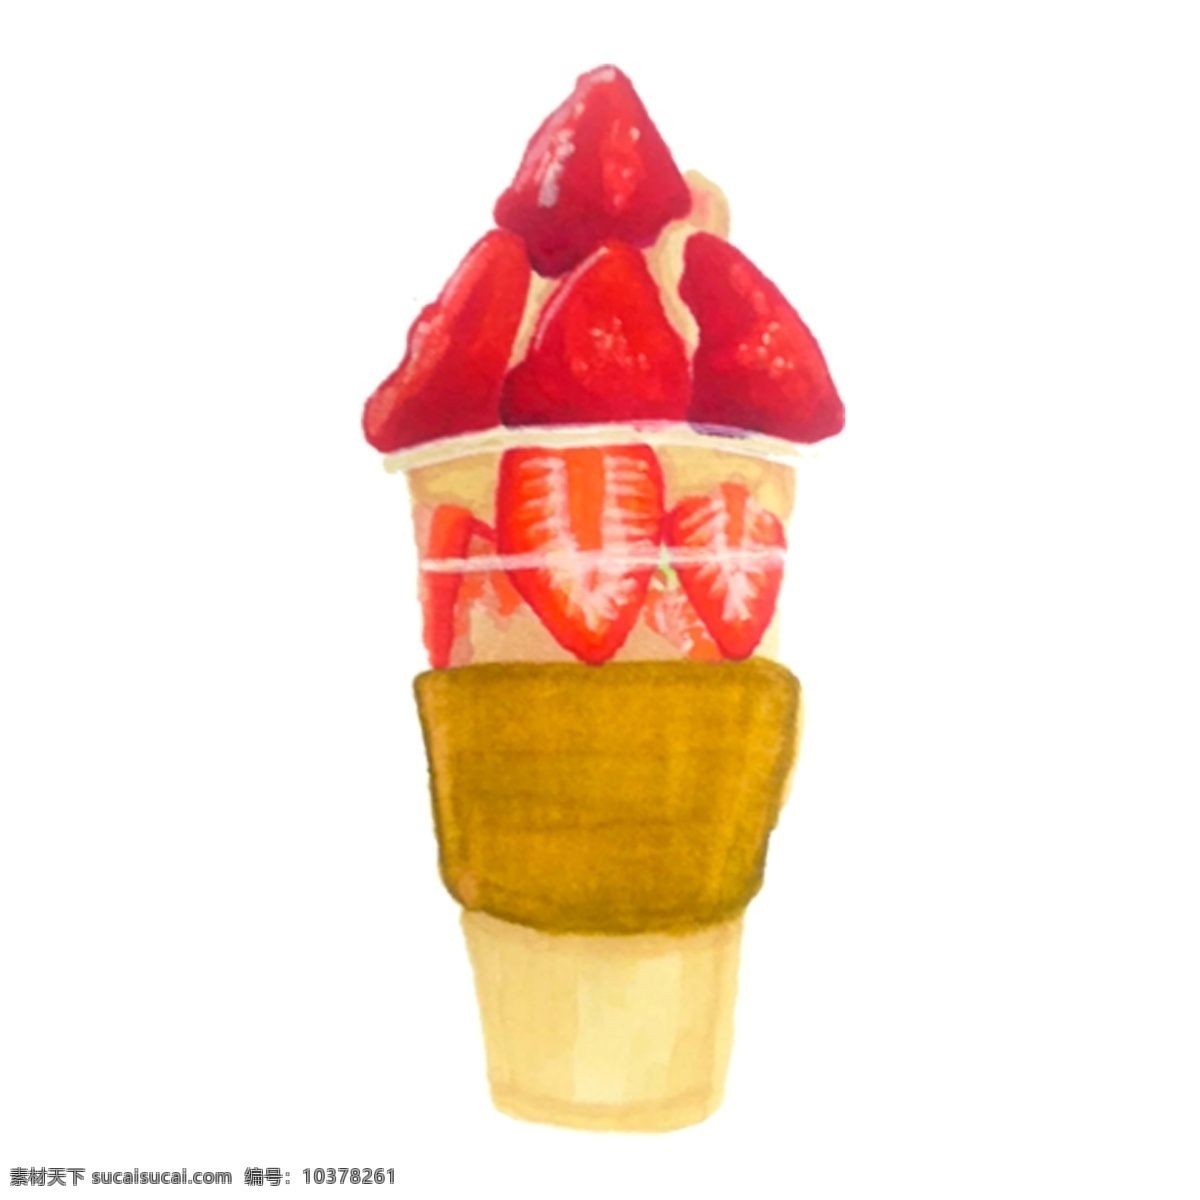 红色 草莓 冰淇淋 免 抠 图 饮料 非常 可口 夏日解署 神器 卡通美食 手绘美食 可乐冰淇淋 美味